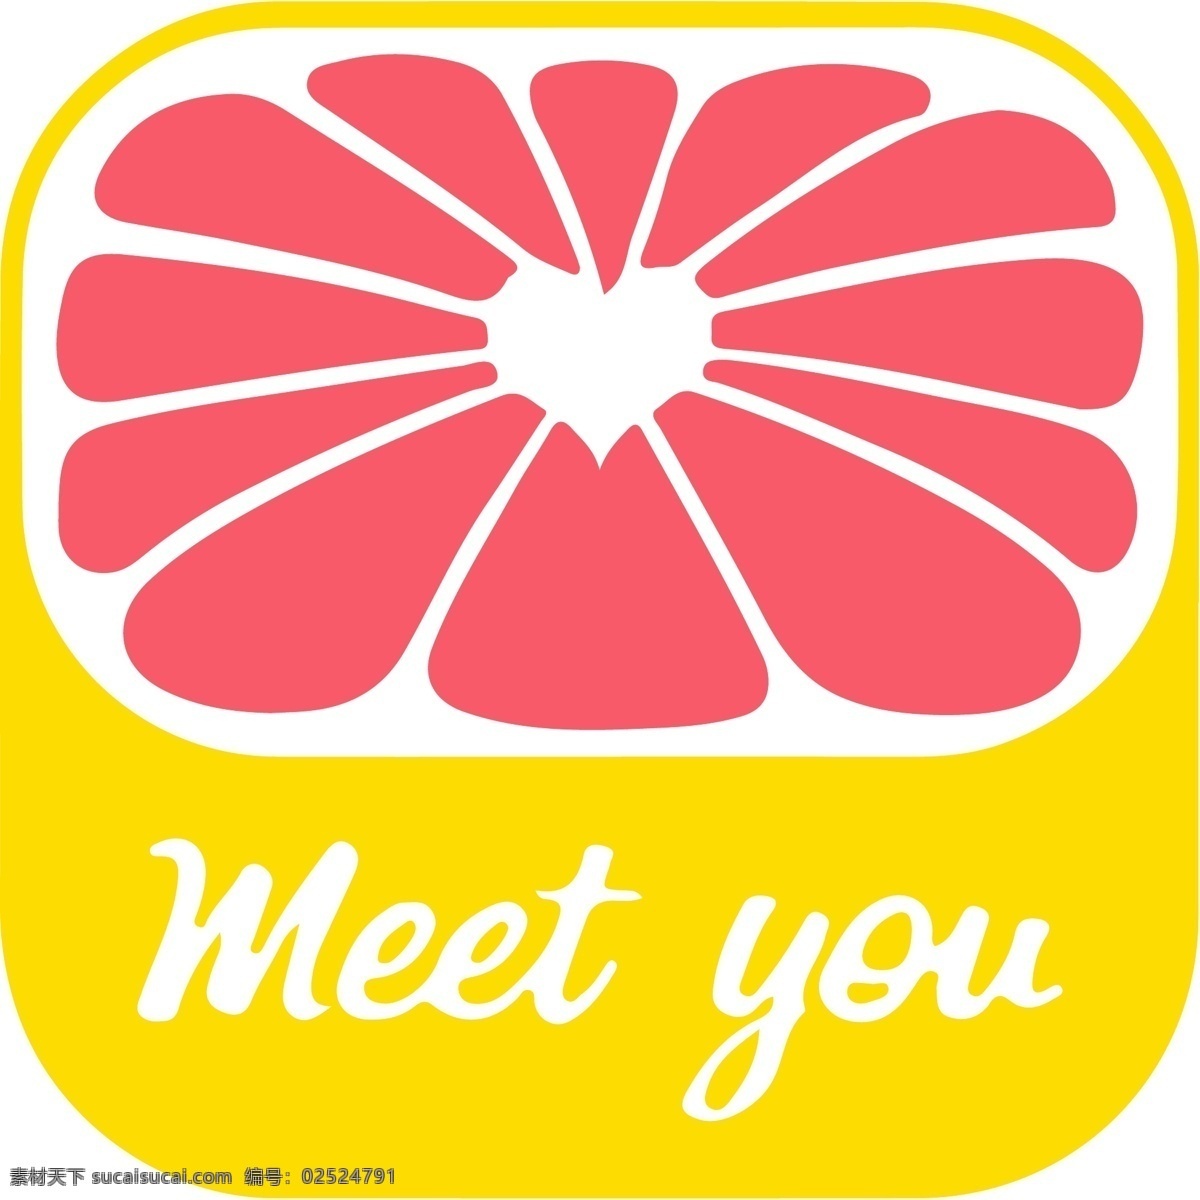 美 柚 applogo 美柚 logo app meet you 女性 记录 软件 柚子 标志图标 其他图标